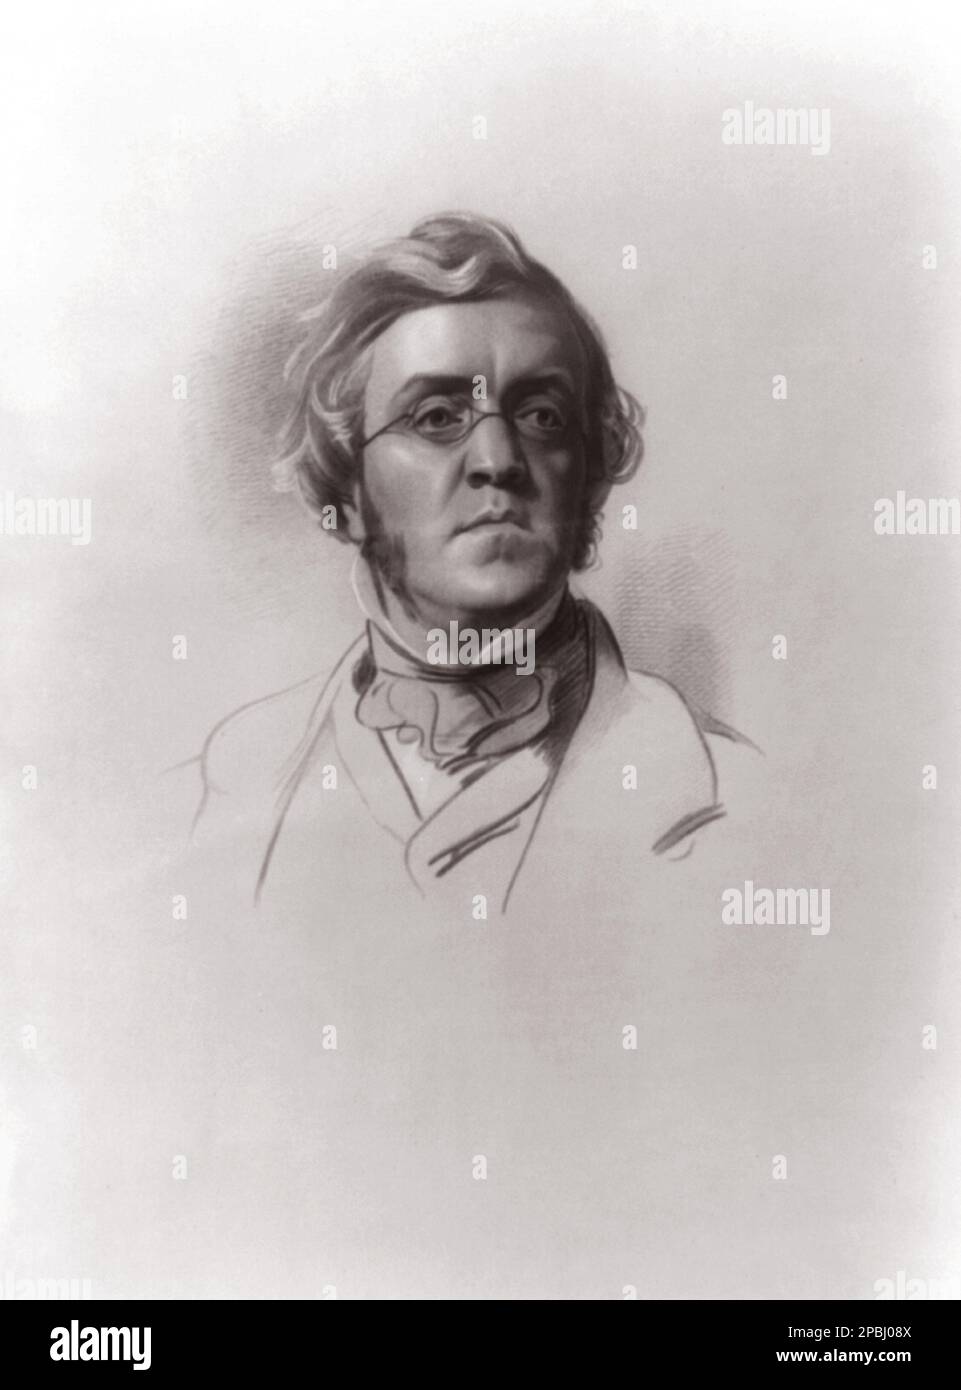 L'écrivain britannique William MakePeace Thackeray ( 1811 - 1863 ) . Il était célèbre pour ses œuvres satiriques, en particulier VANITY FAIR ( la fiera delle vanità ), un portrait panoramique de la société anglaise . - LETTERATO - SCRITTORE - LETTERATURA - Littérature - Cravatta - tie - occhiali da vista - Lens --- Archivio GBB Banque D'Images